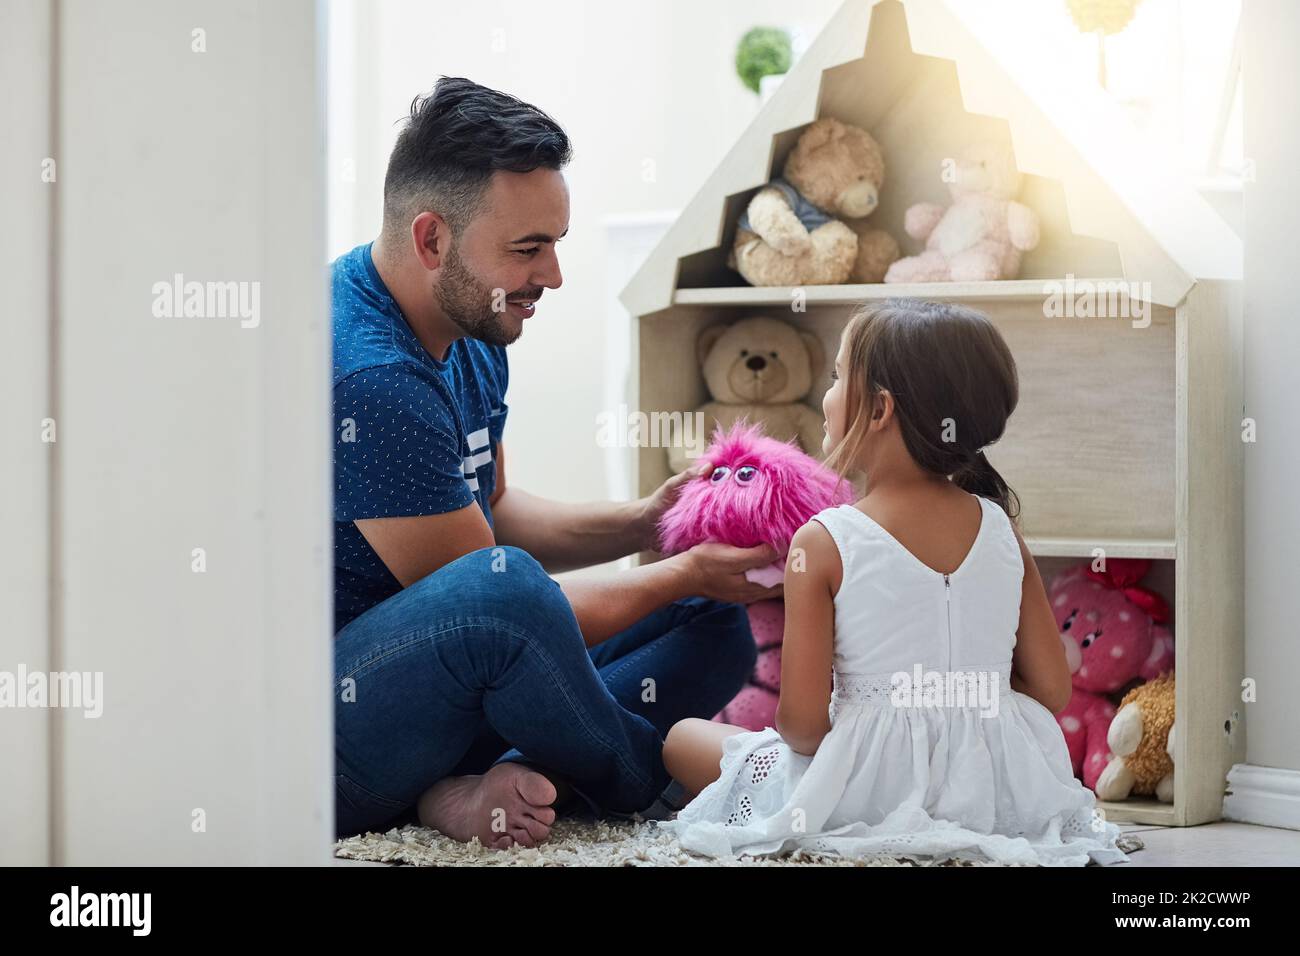 Partager dans sa petite imagination magique. Photo d'un père et d'une fille jouant ensemble à la maison. Banque D'Images